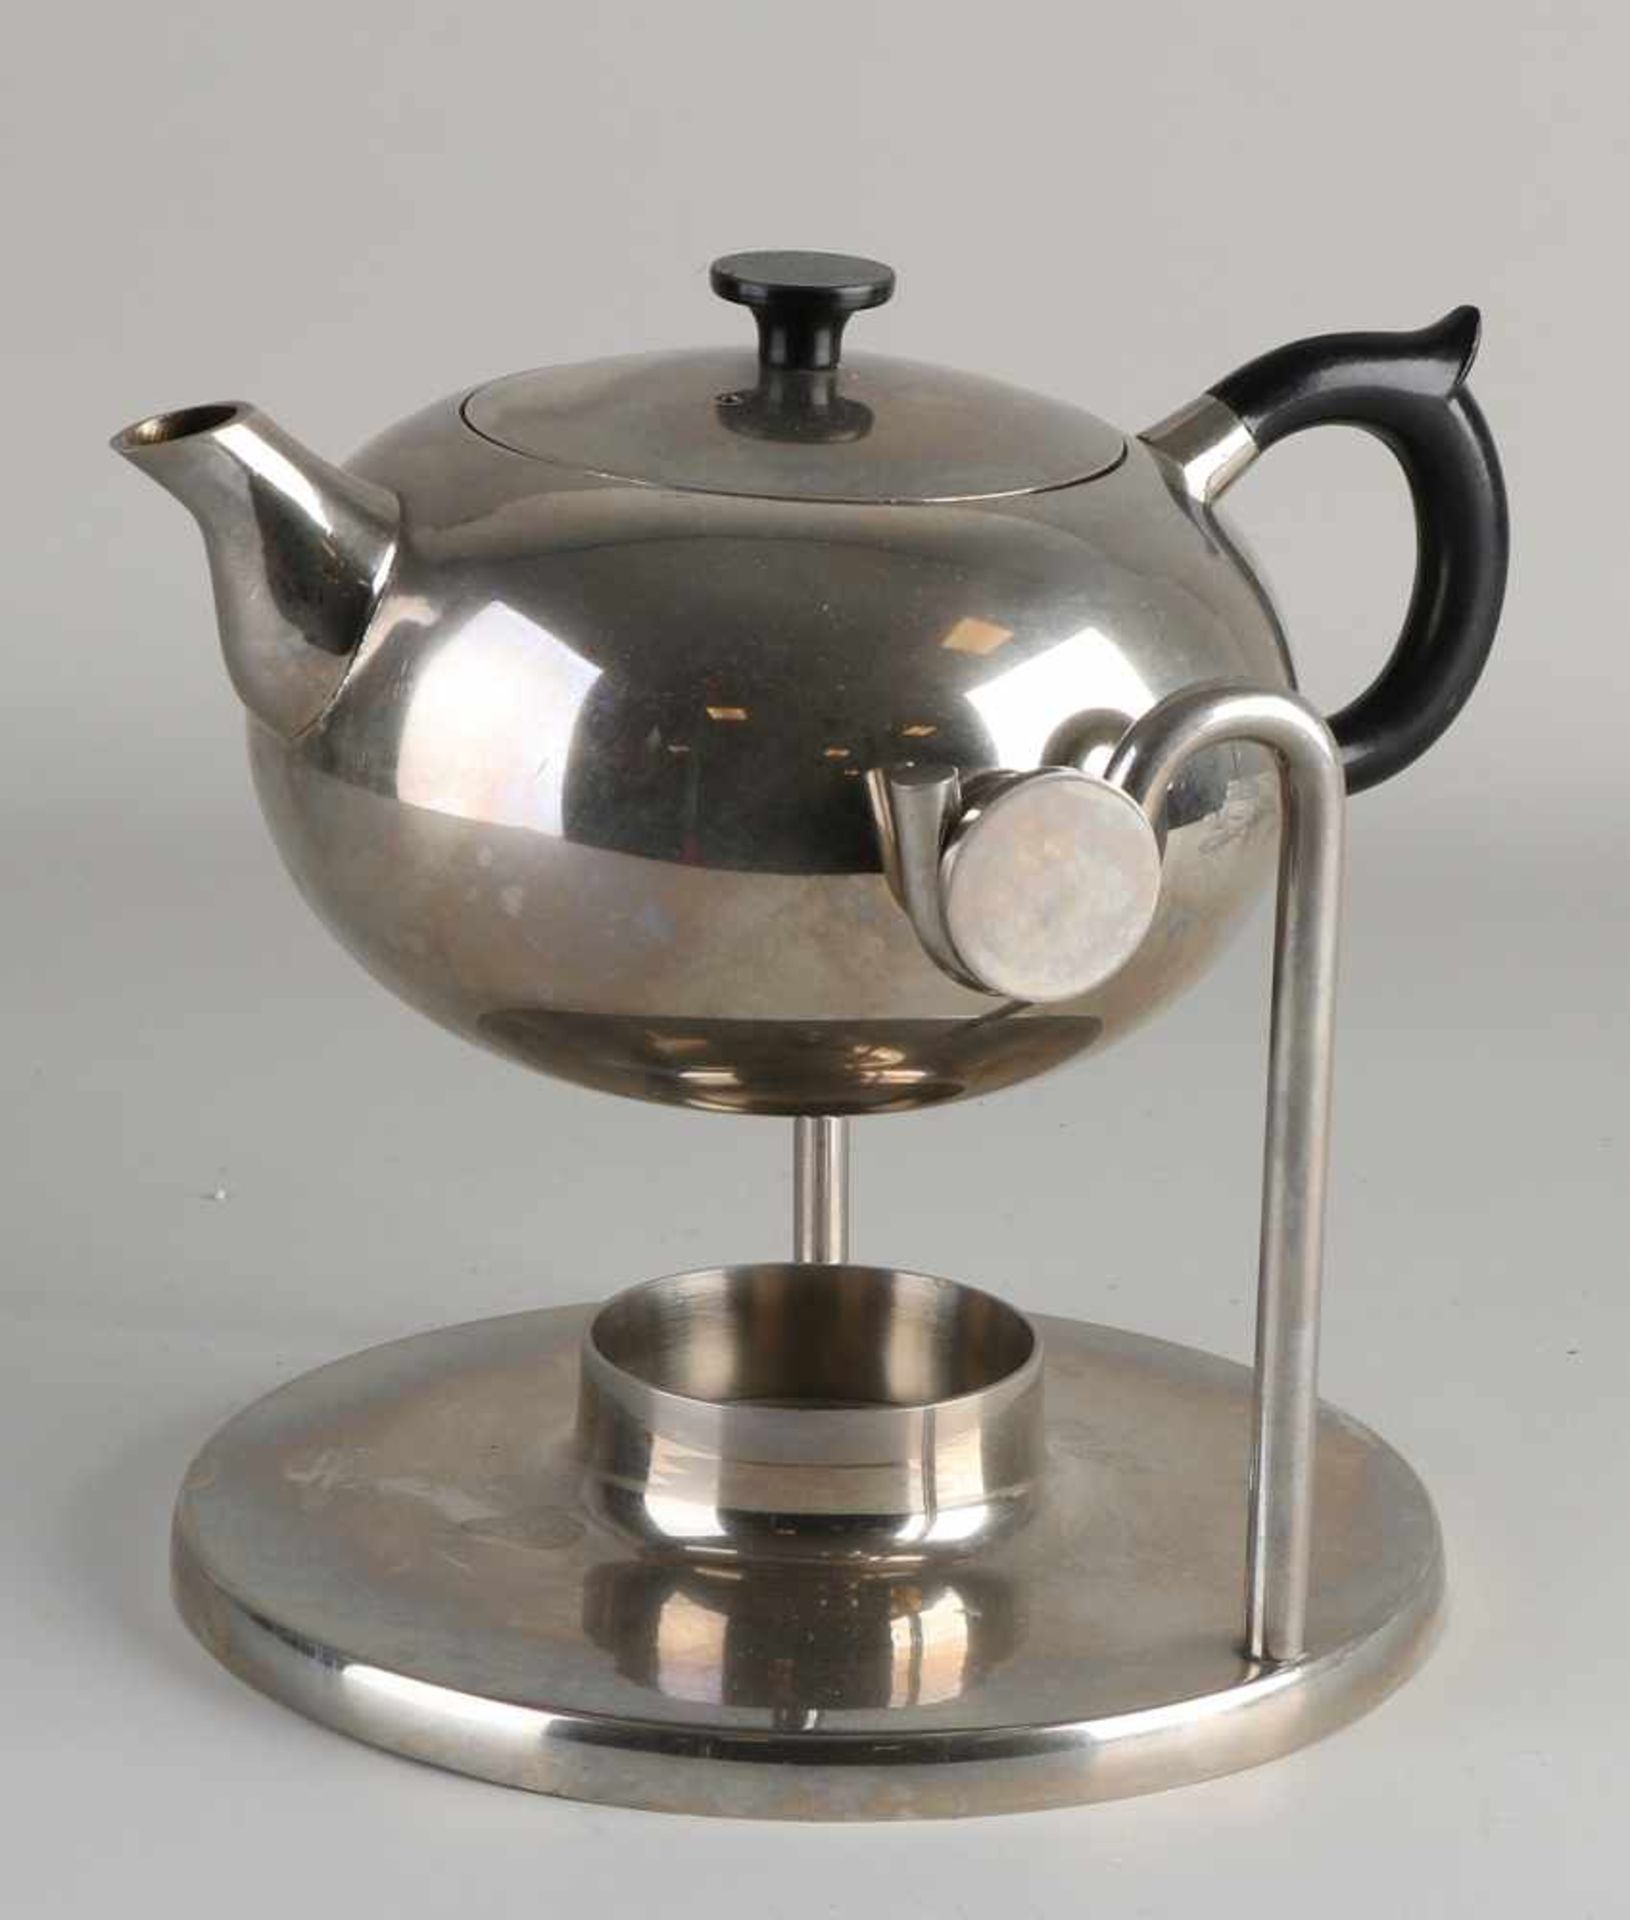 Teekanne aus vernickeltem Messing im Bauhausstil mit Komfort. Ohne Brenner. Um 1930 - 1950.